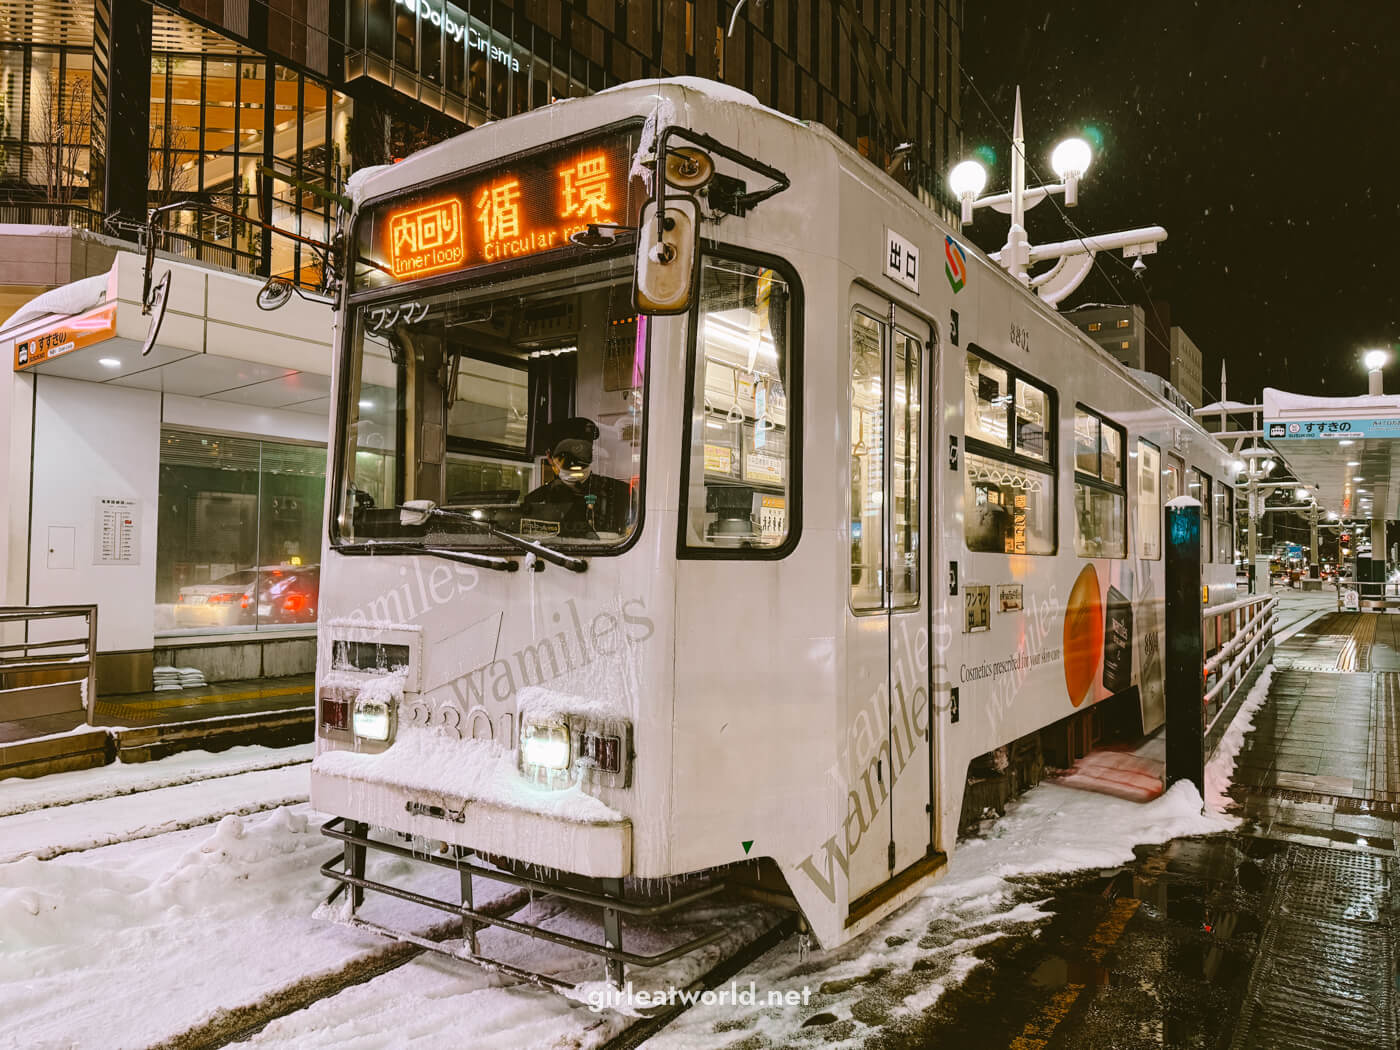 Sapporo Streetcar in Susukino